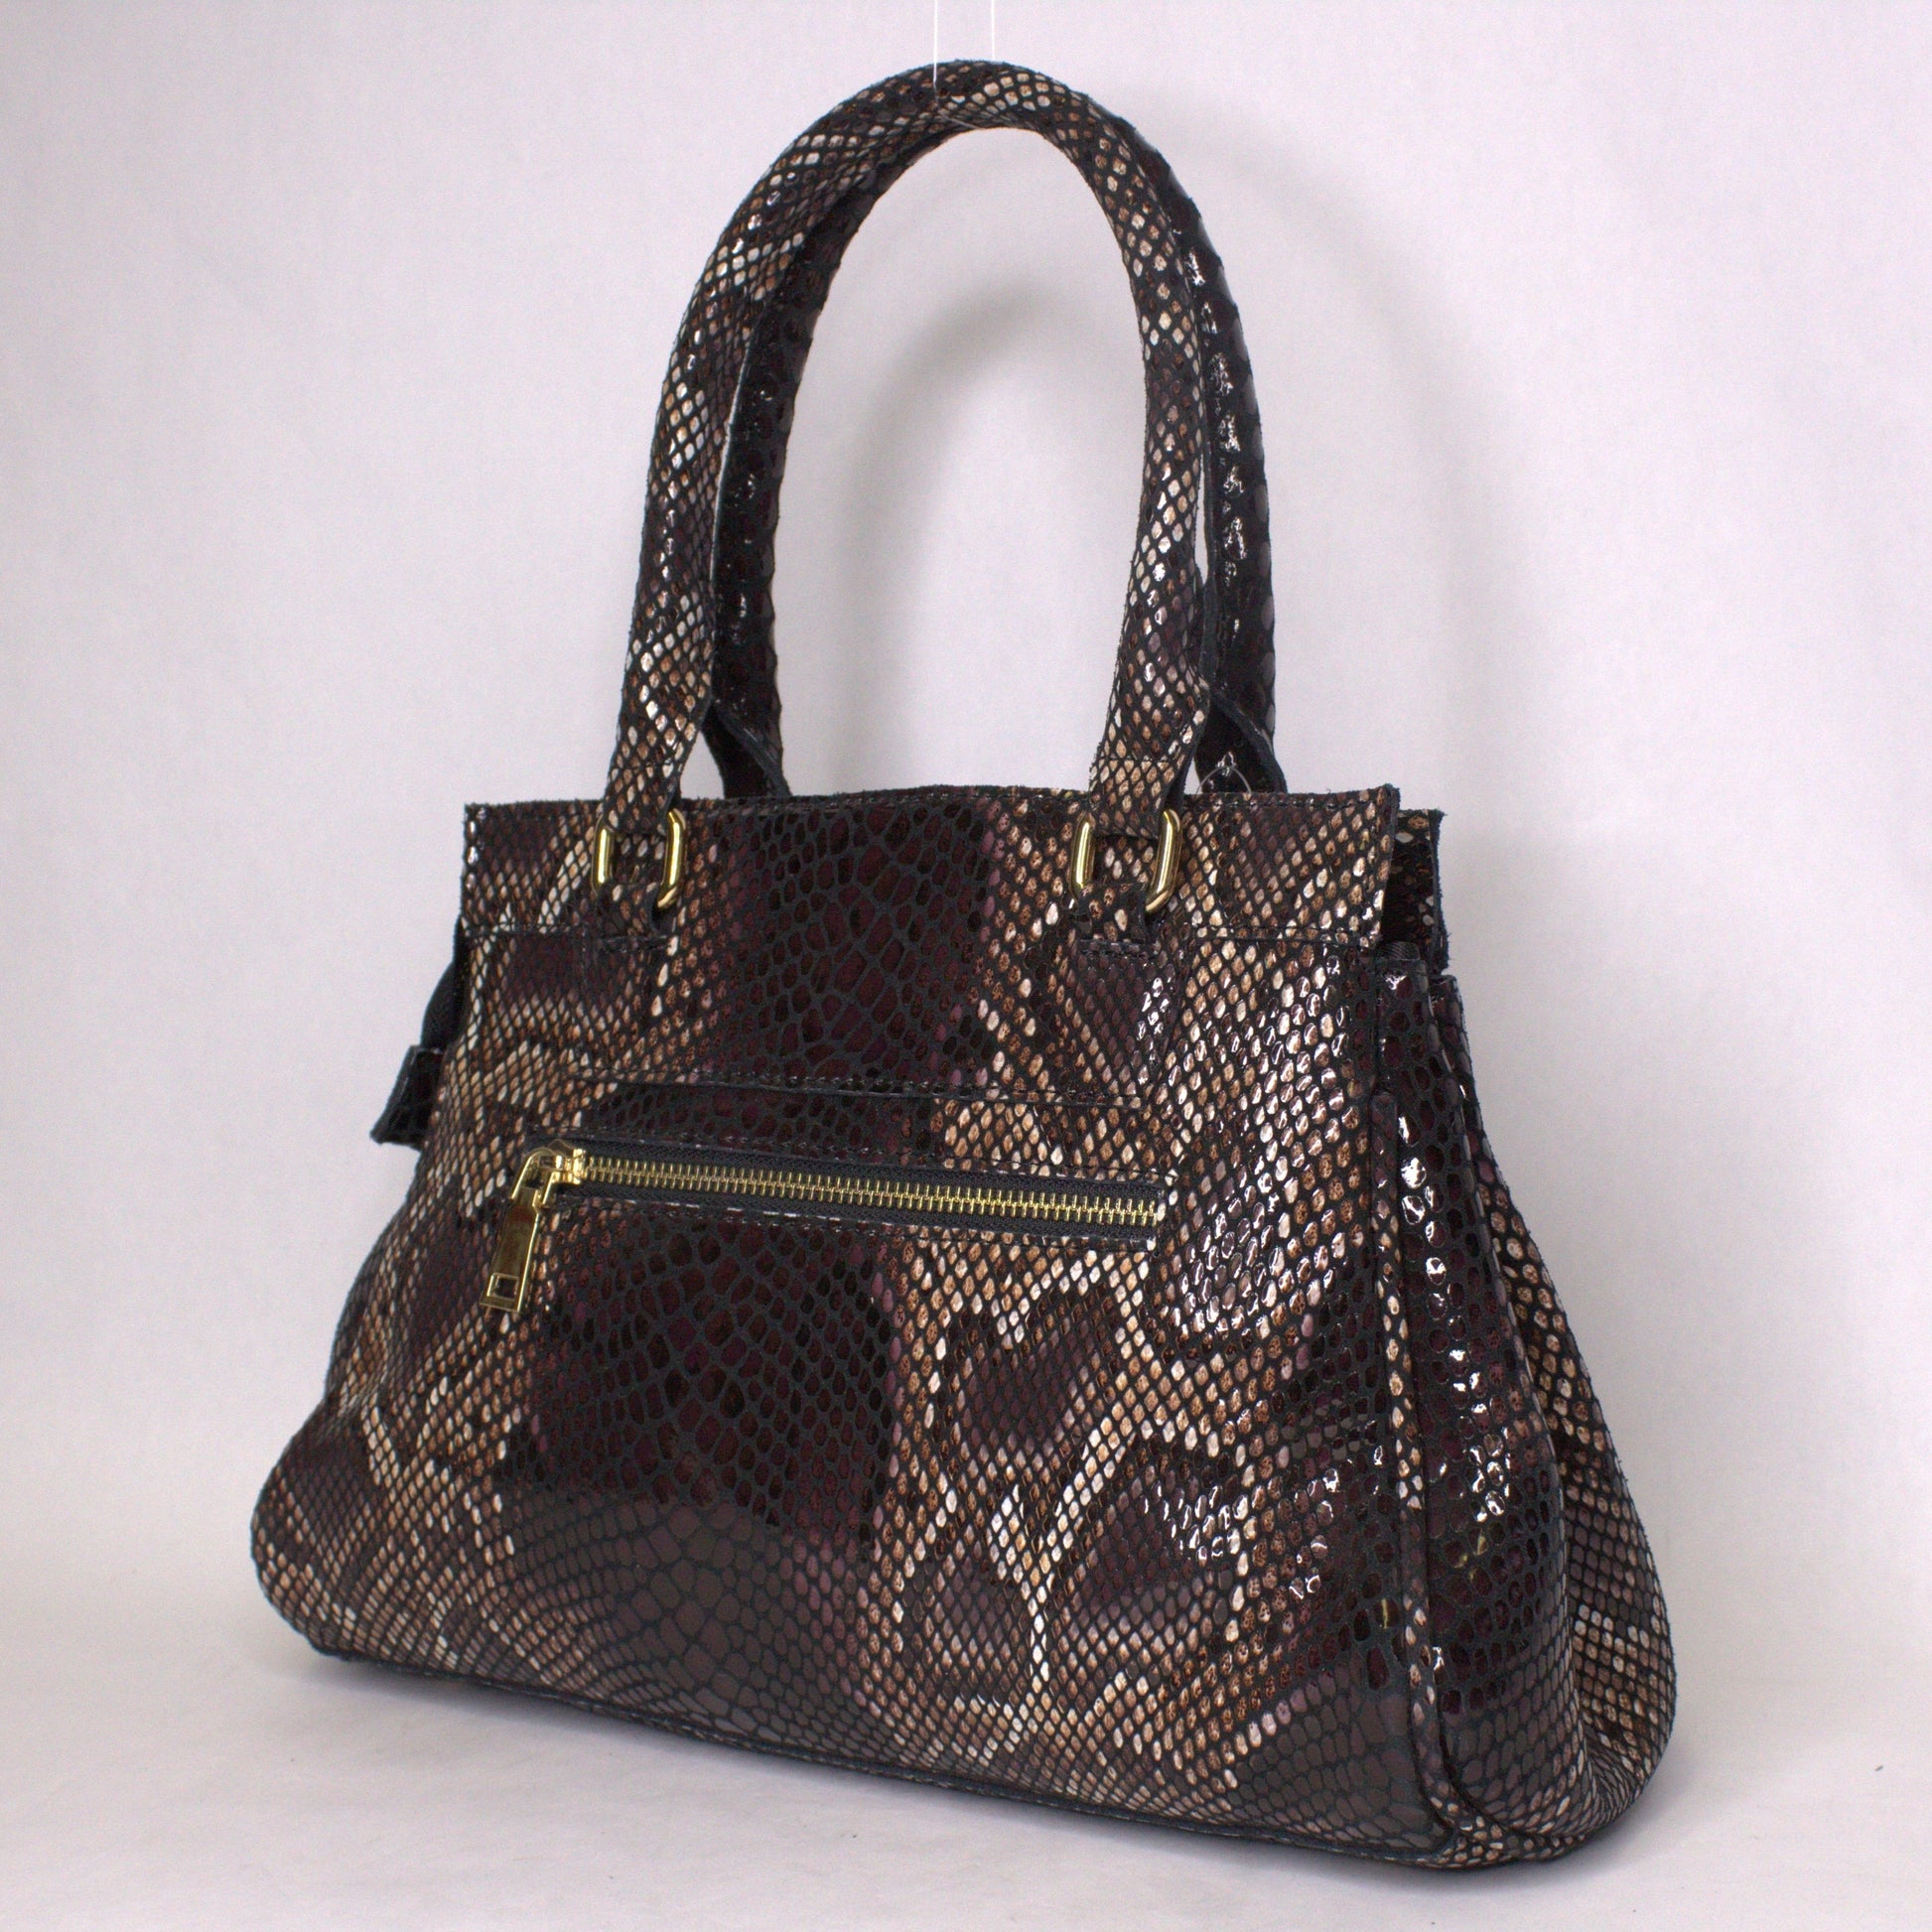 Cobra Leather handbag